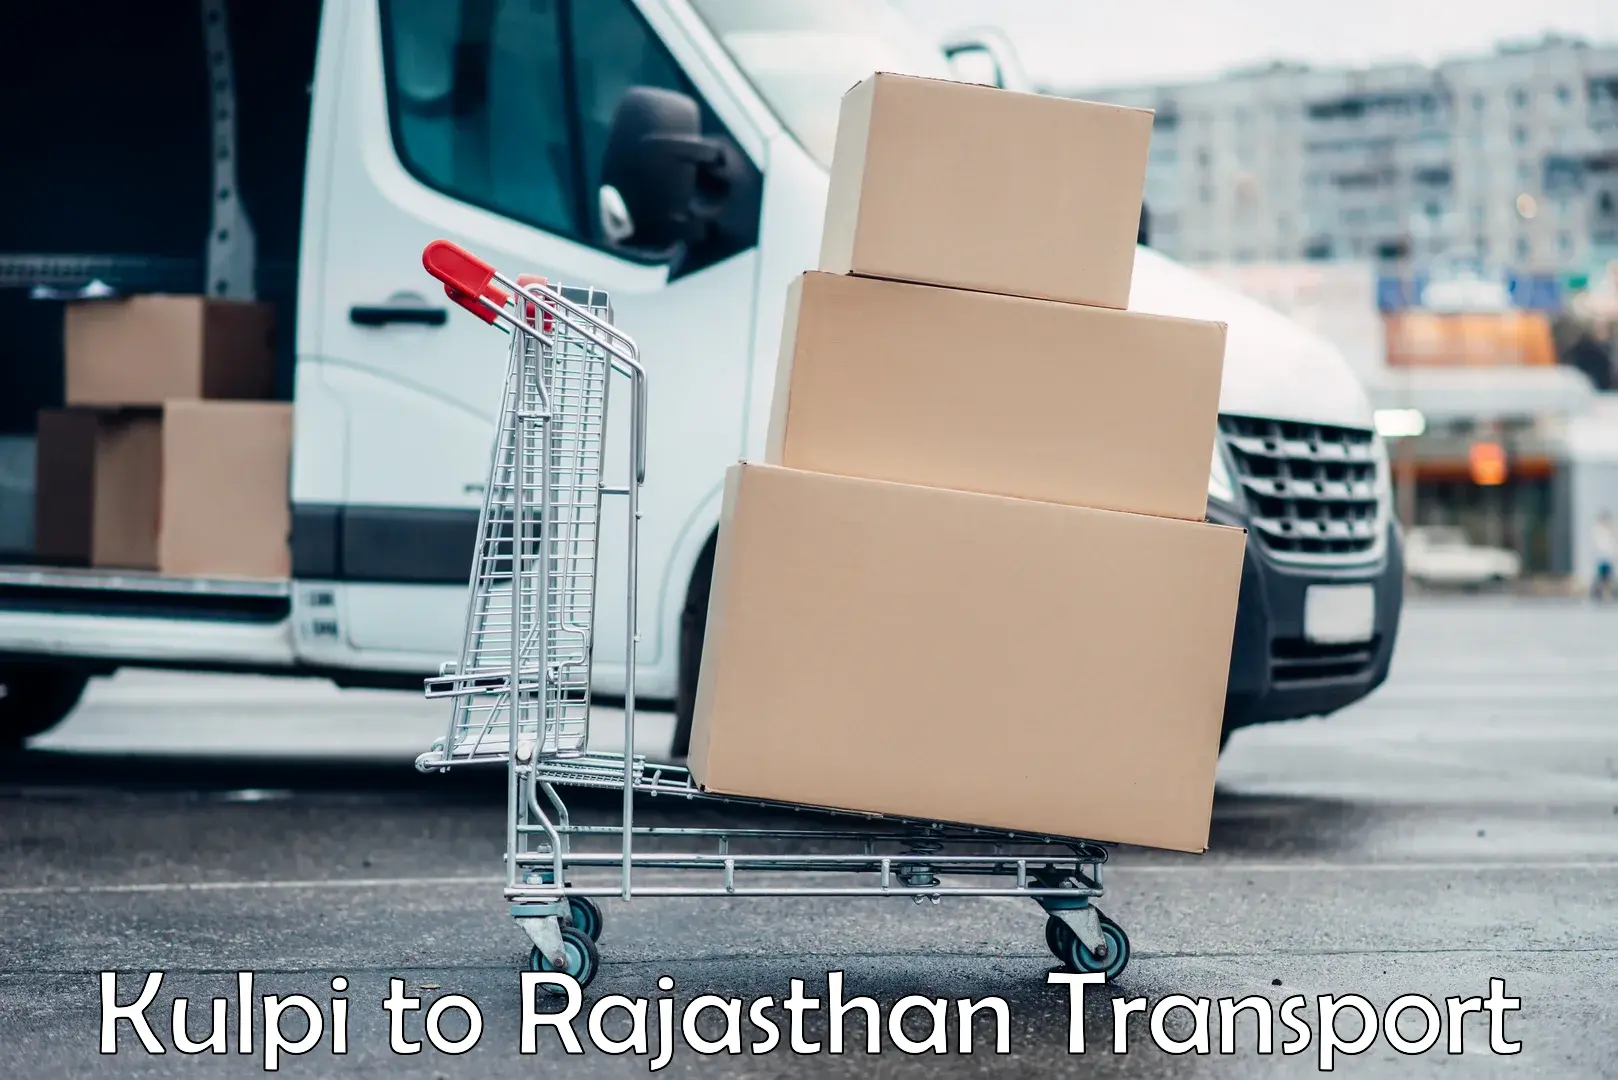 Parcel transport services Kulpi to Jaipur